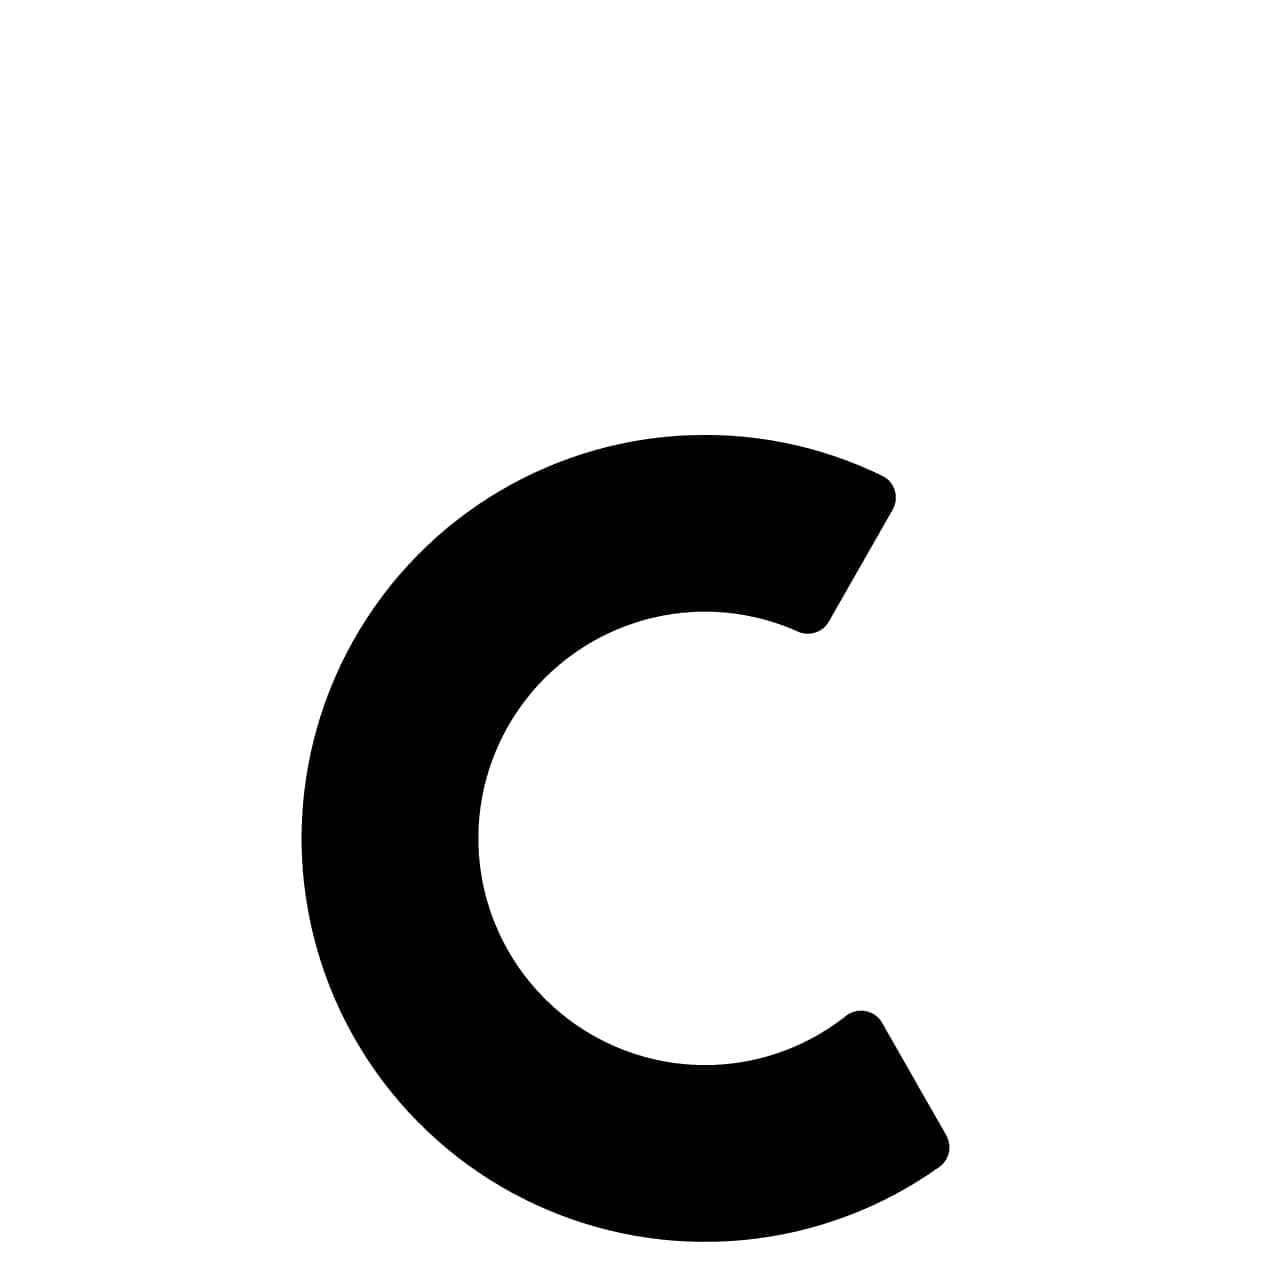 Samoprzylepny numer domu „C” - 40 mm w kolorze czarnym